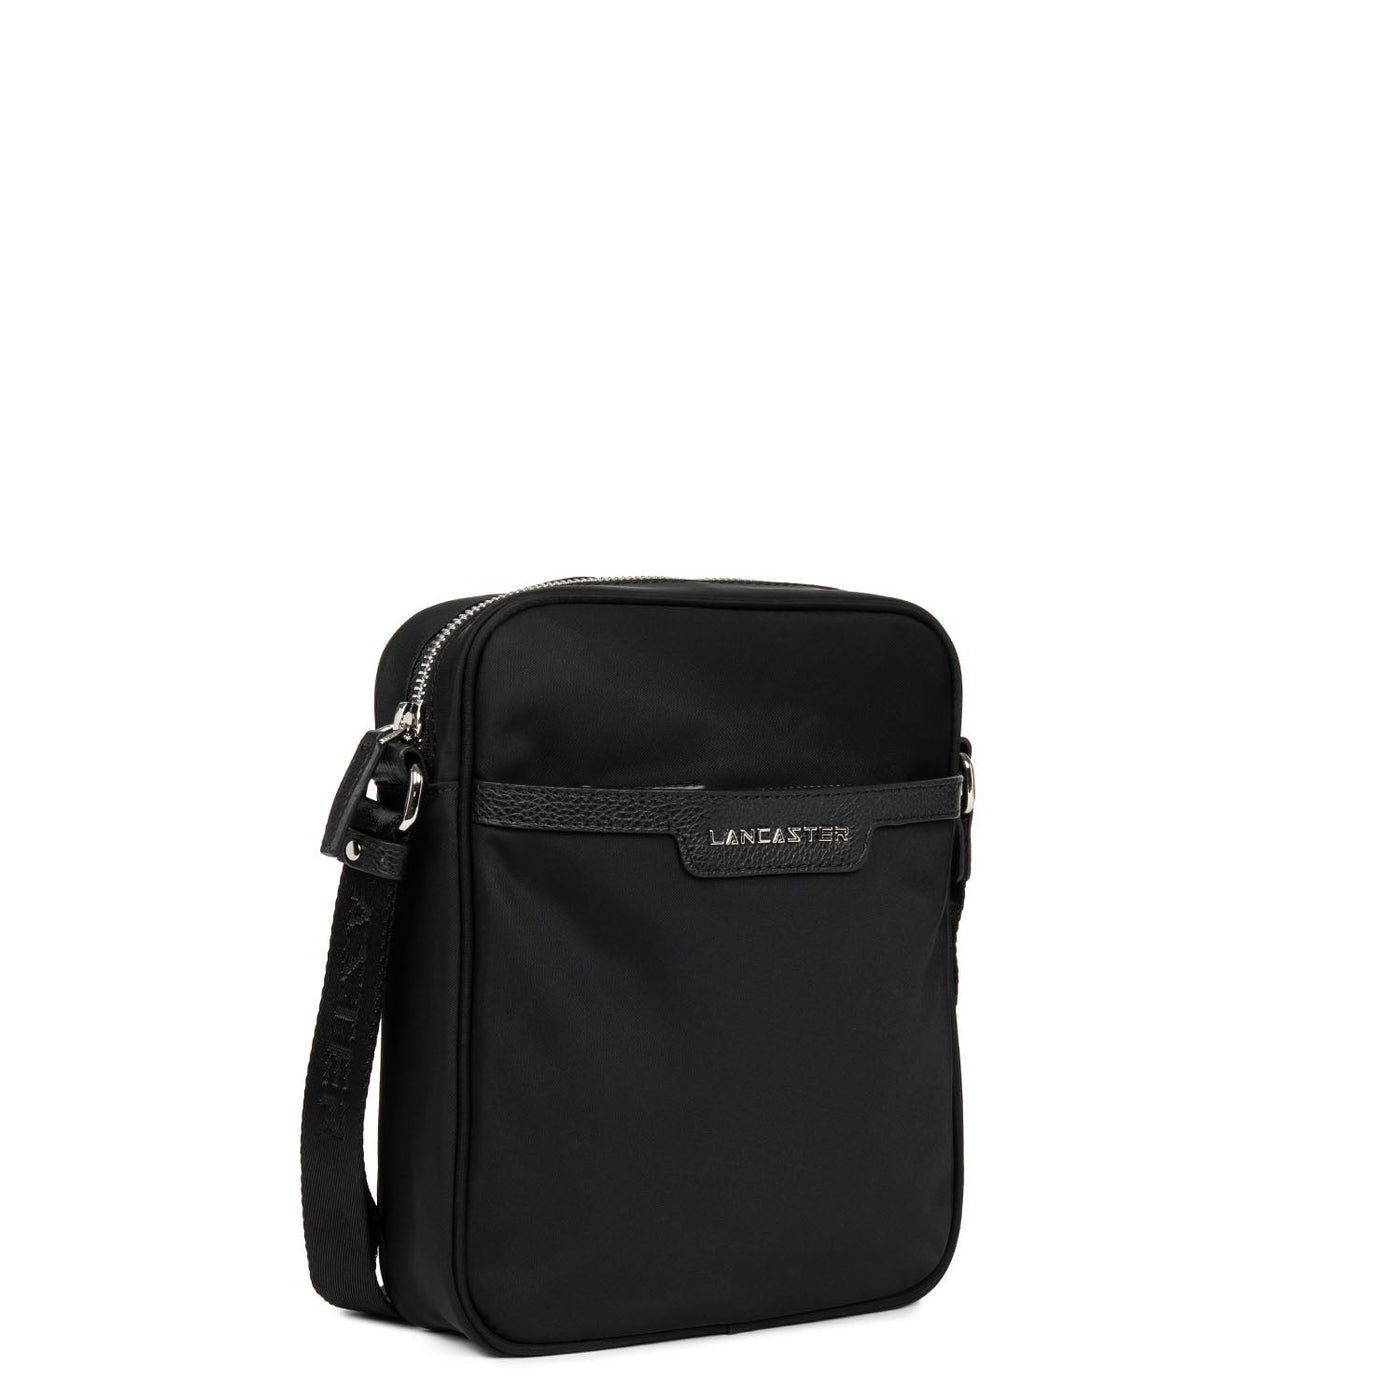 crossbody bag - basic premium homme #couleur_noir